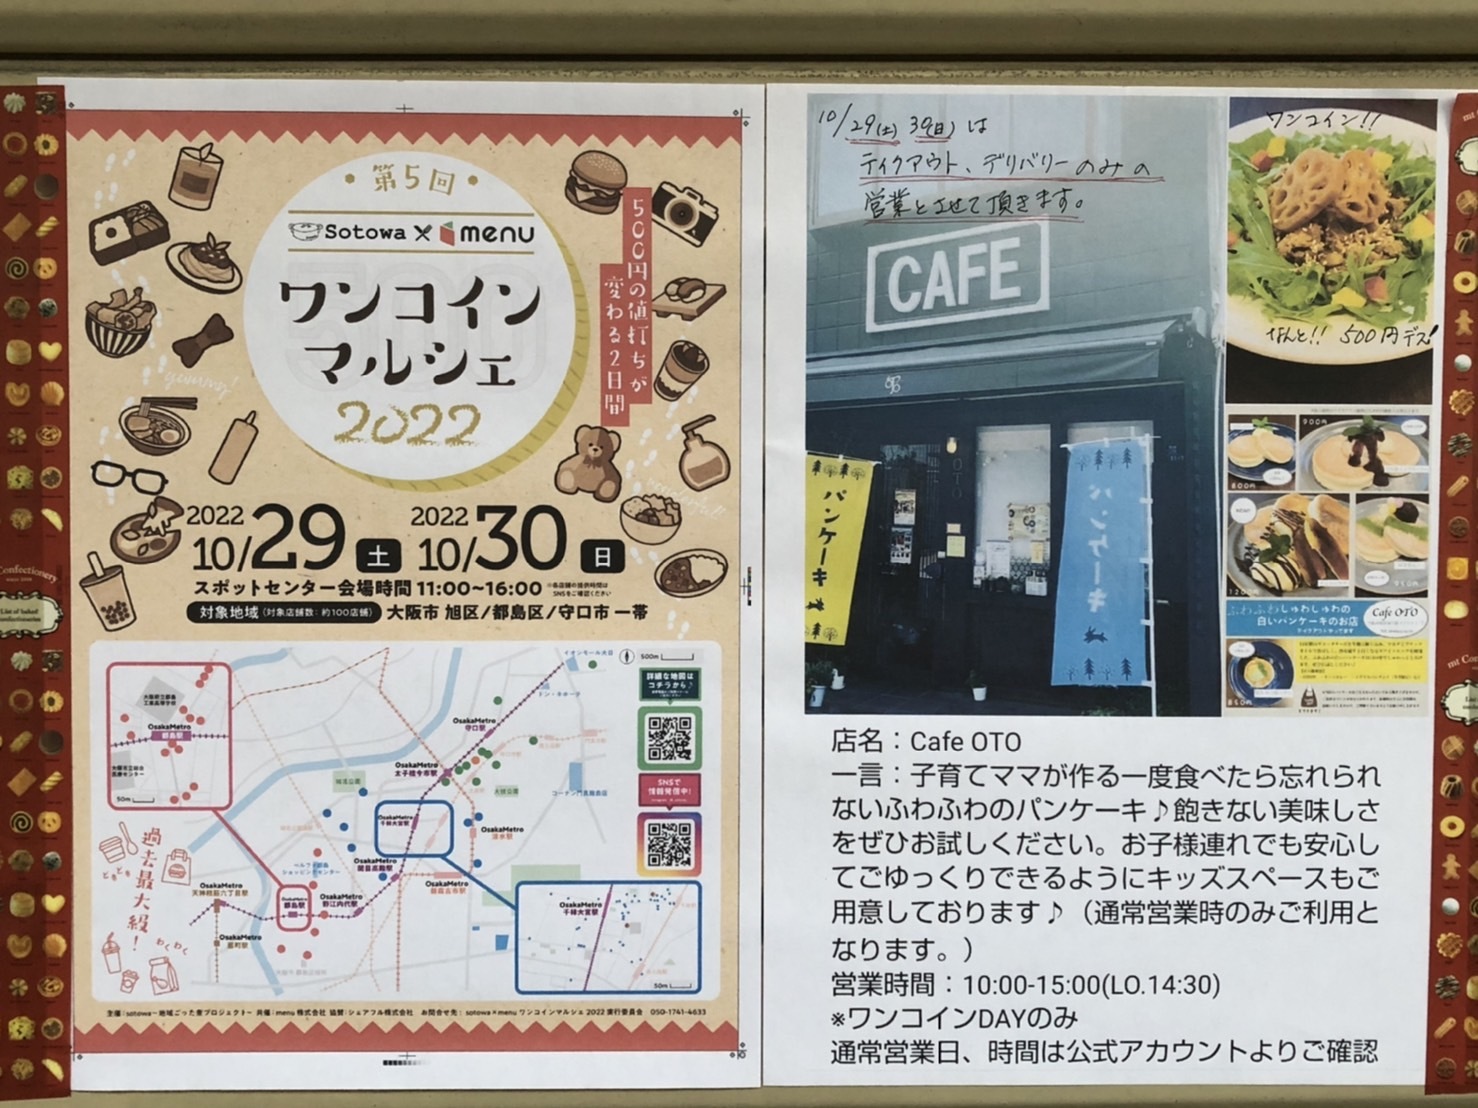 京かいどう商店街の「Cae OTO」のシャッターに掲示。お店からのメッセージが伝わります～